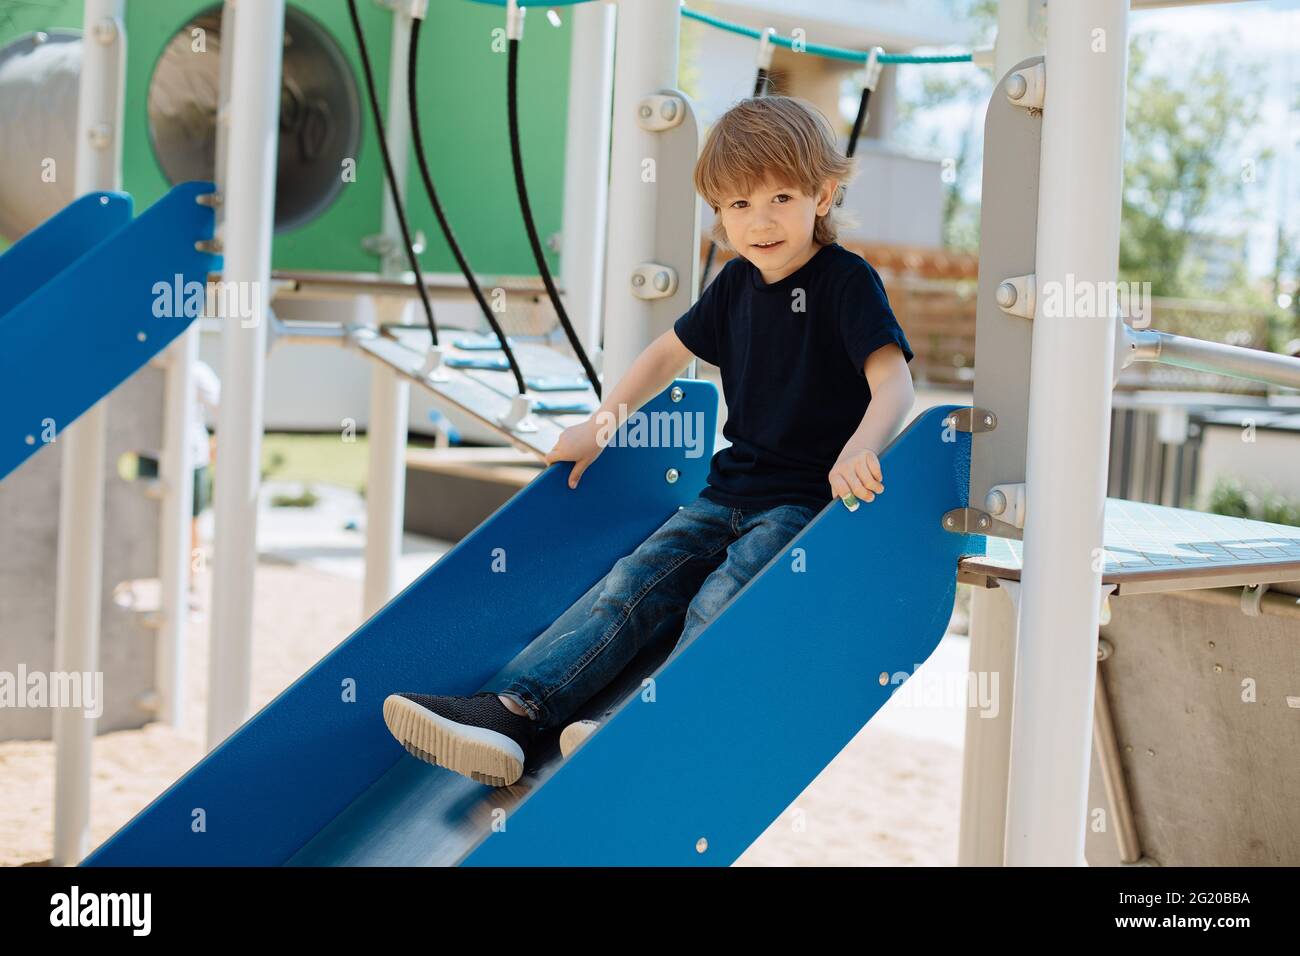 Il bambino di 3 anni si siede sullo scivolo e guarda la camera.concetto di intrattenimento e attività all'aperto per i bambini. Foto Stock